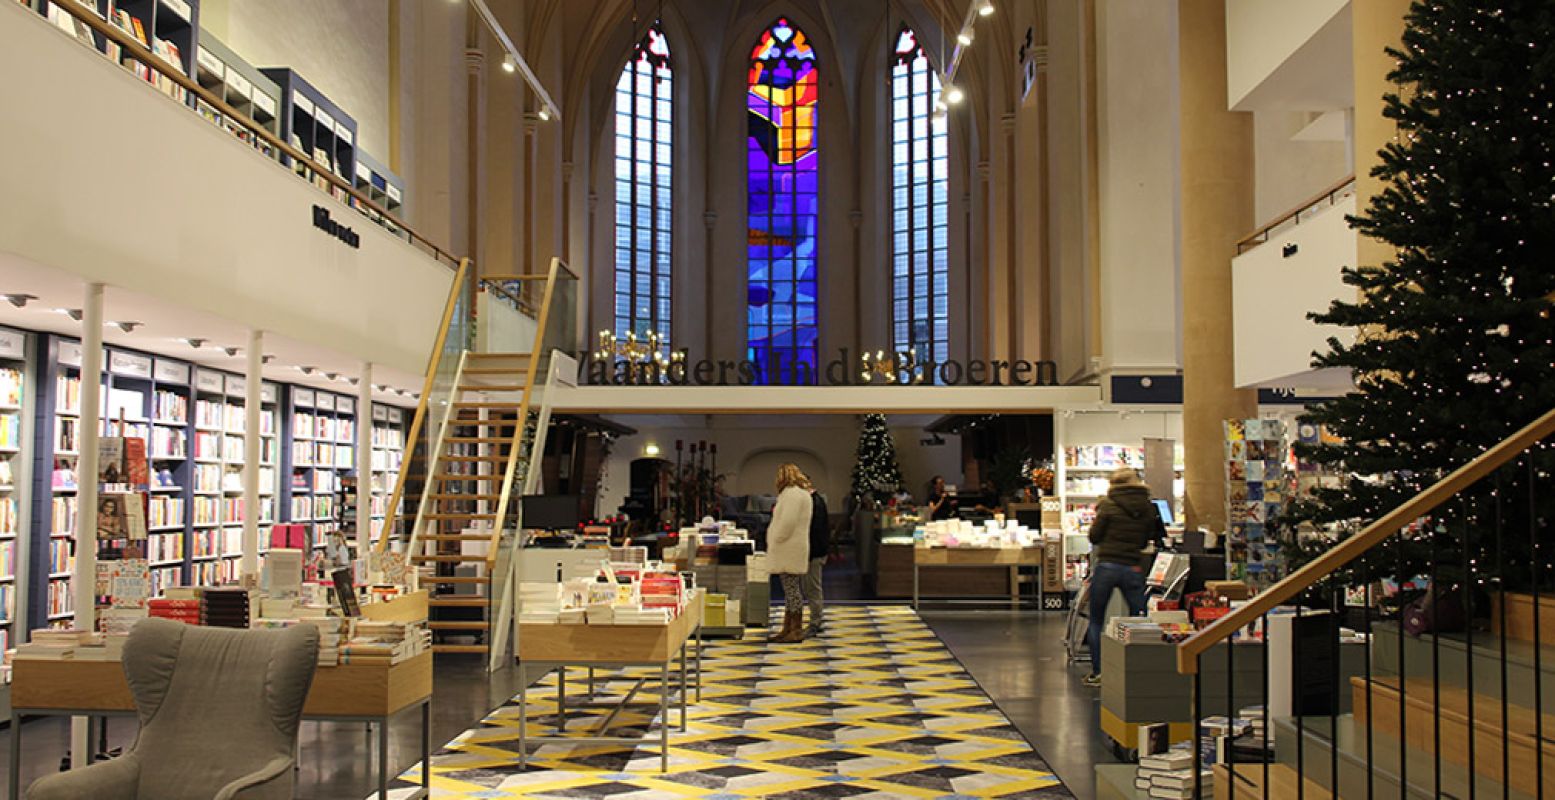 De boekenwinkel zit sinds 2013 in de oude Broerenkerk, eerst als Waanders in de Broeren. De bouw van de kerk startte in 1466 en werd voltooid in 1512. Foto: DagjeWeg.NL.